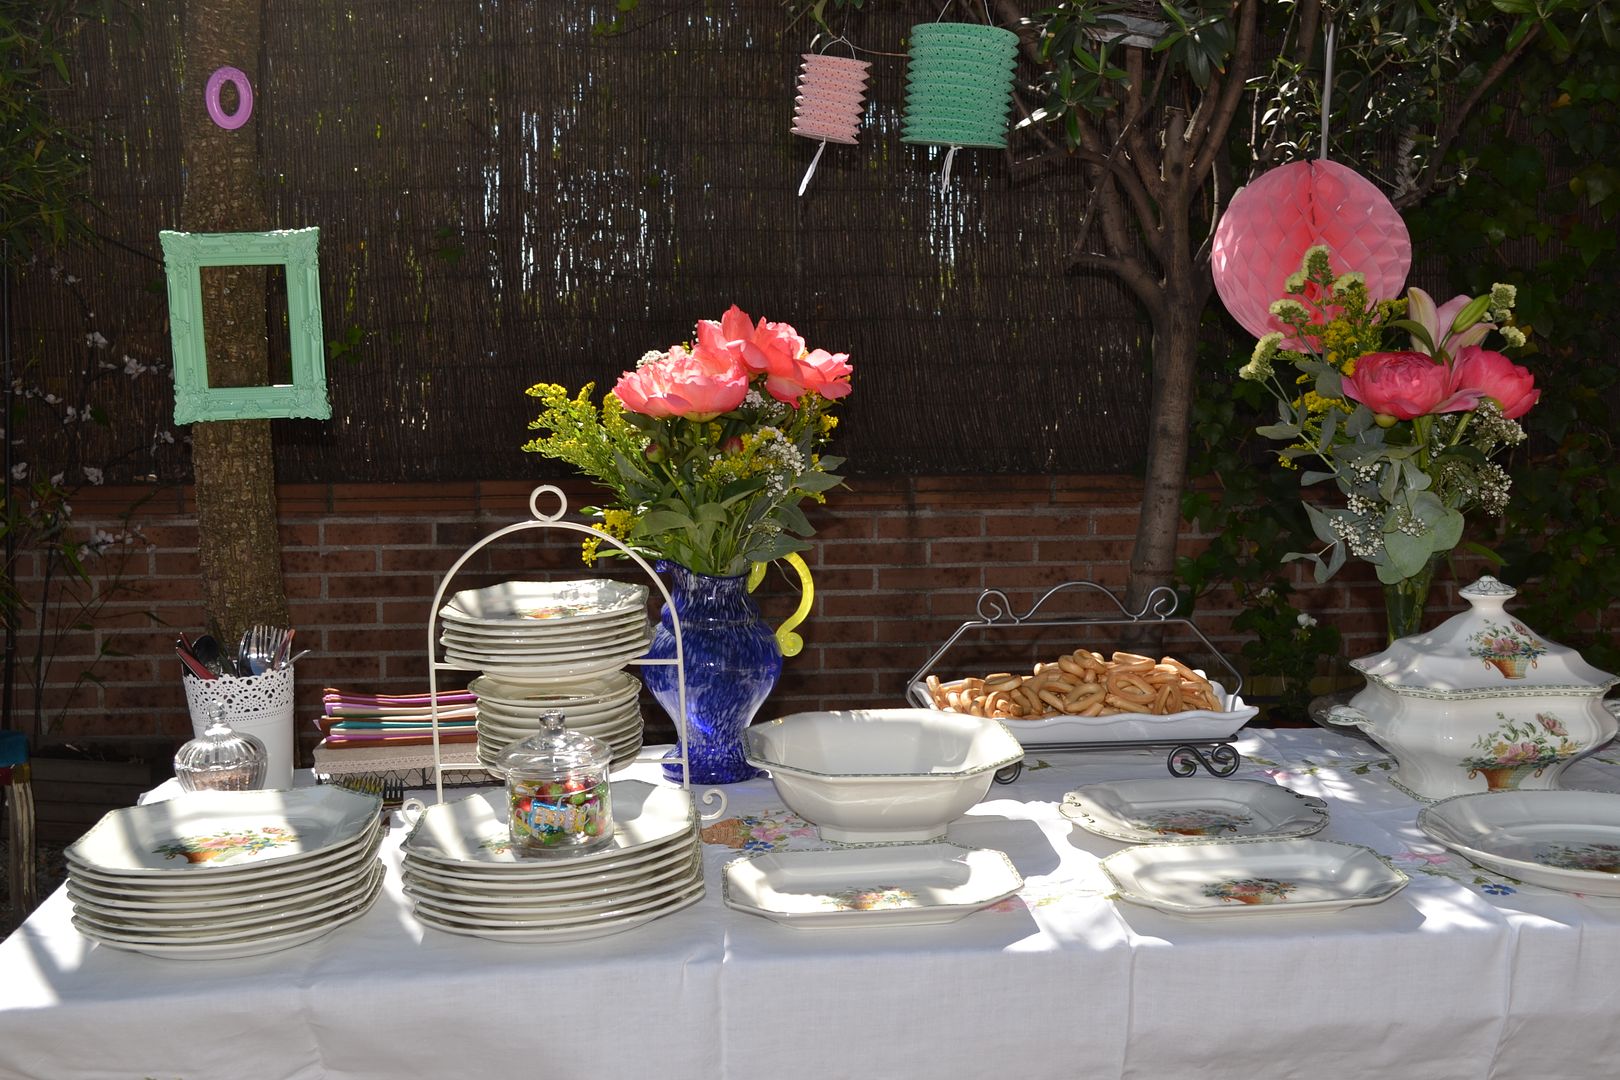  photo buffet-comida-celebracioacuten-terraza-jardiacuten-fiesta1_zps7c017e12.jpg